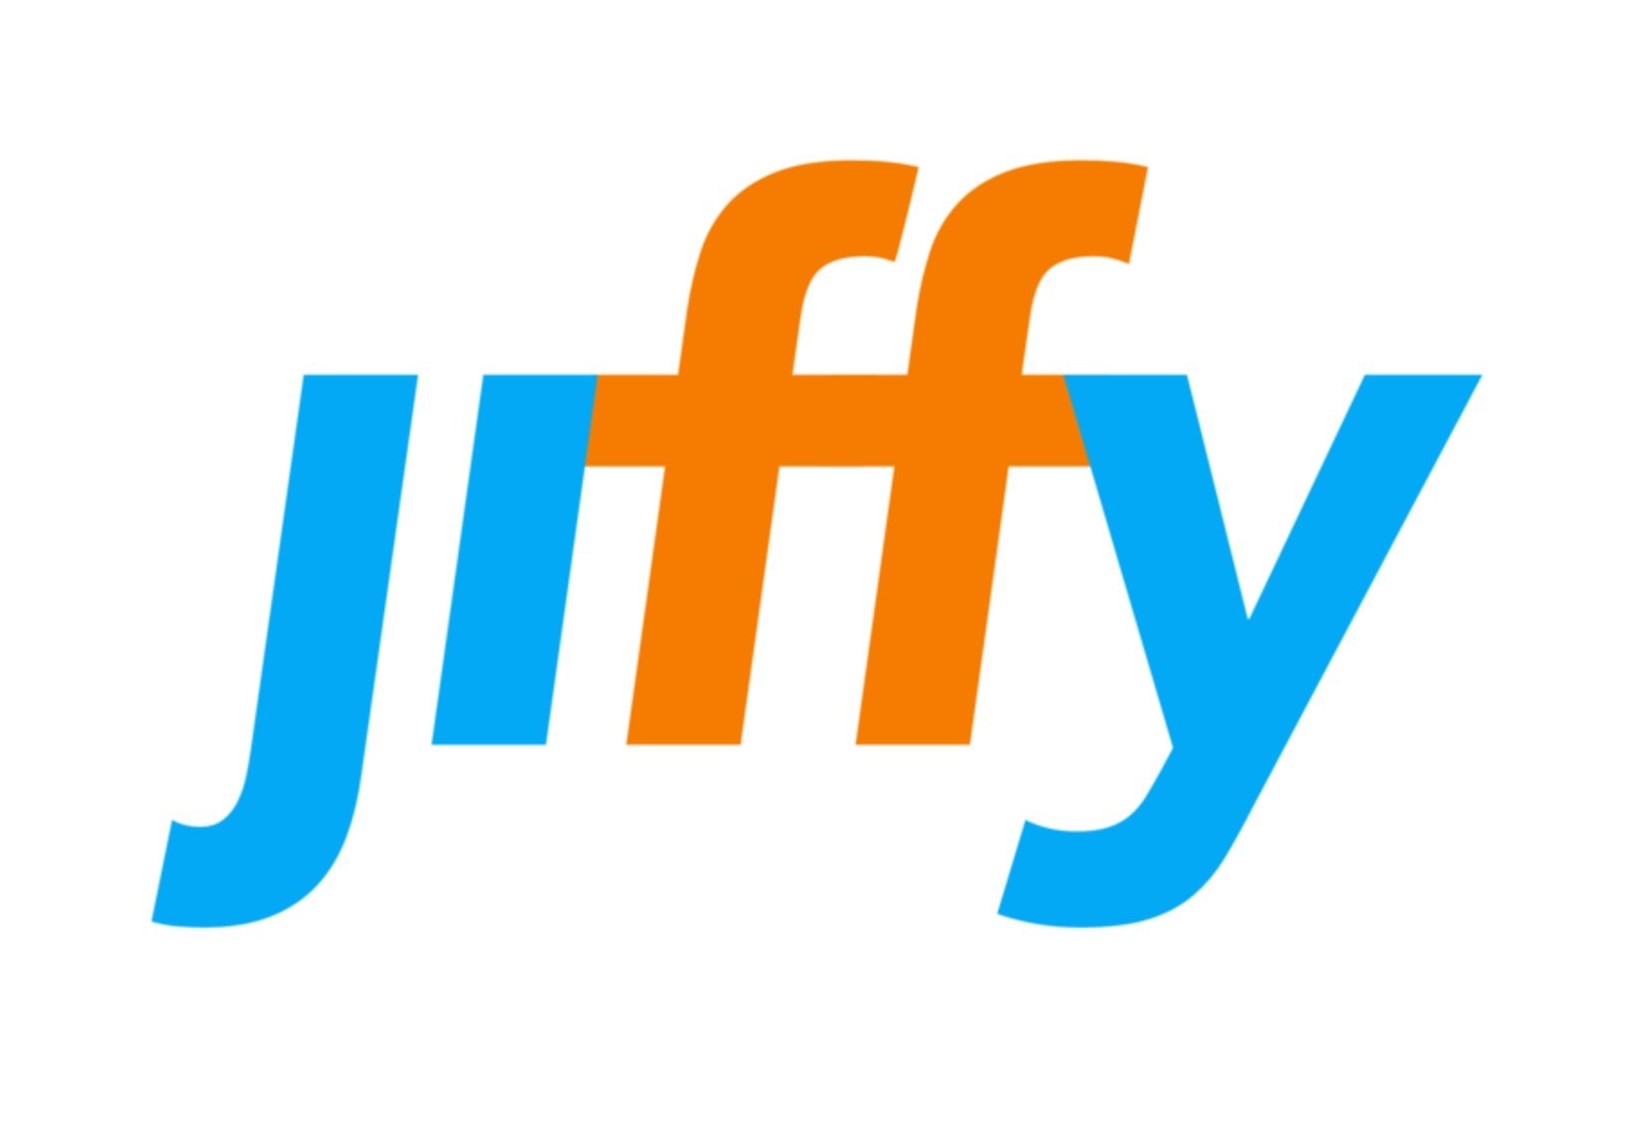 Jiffy_Logo